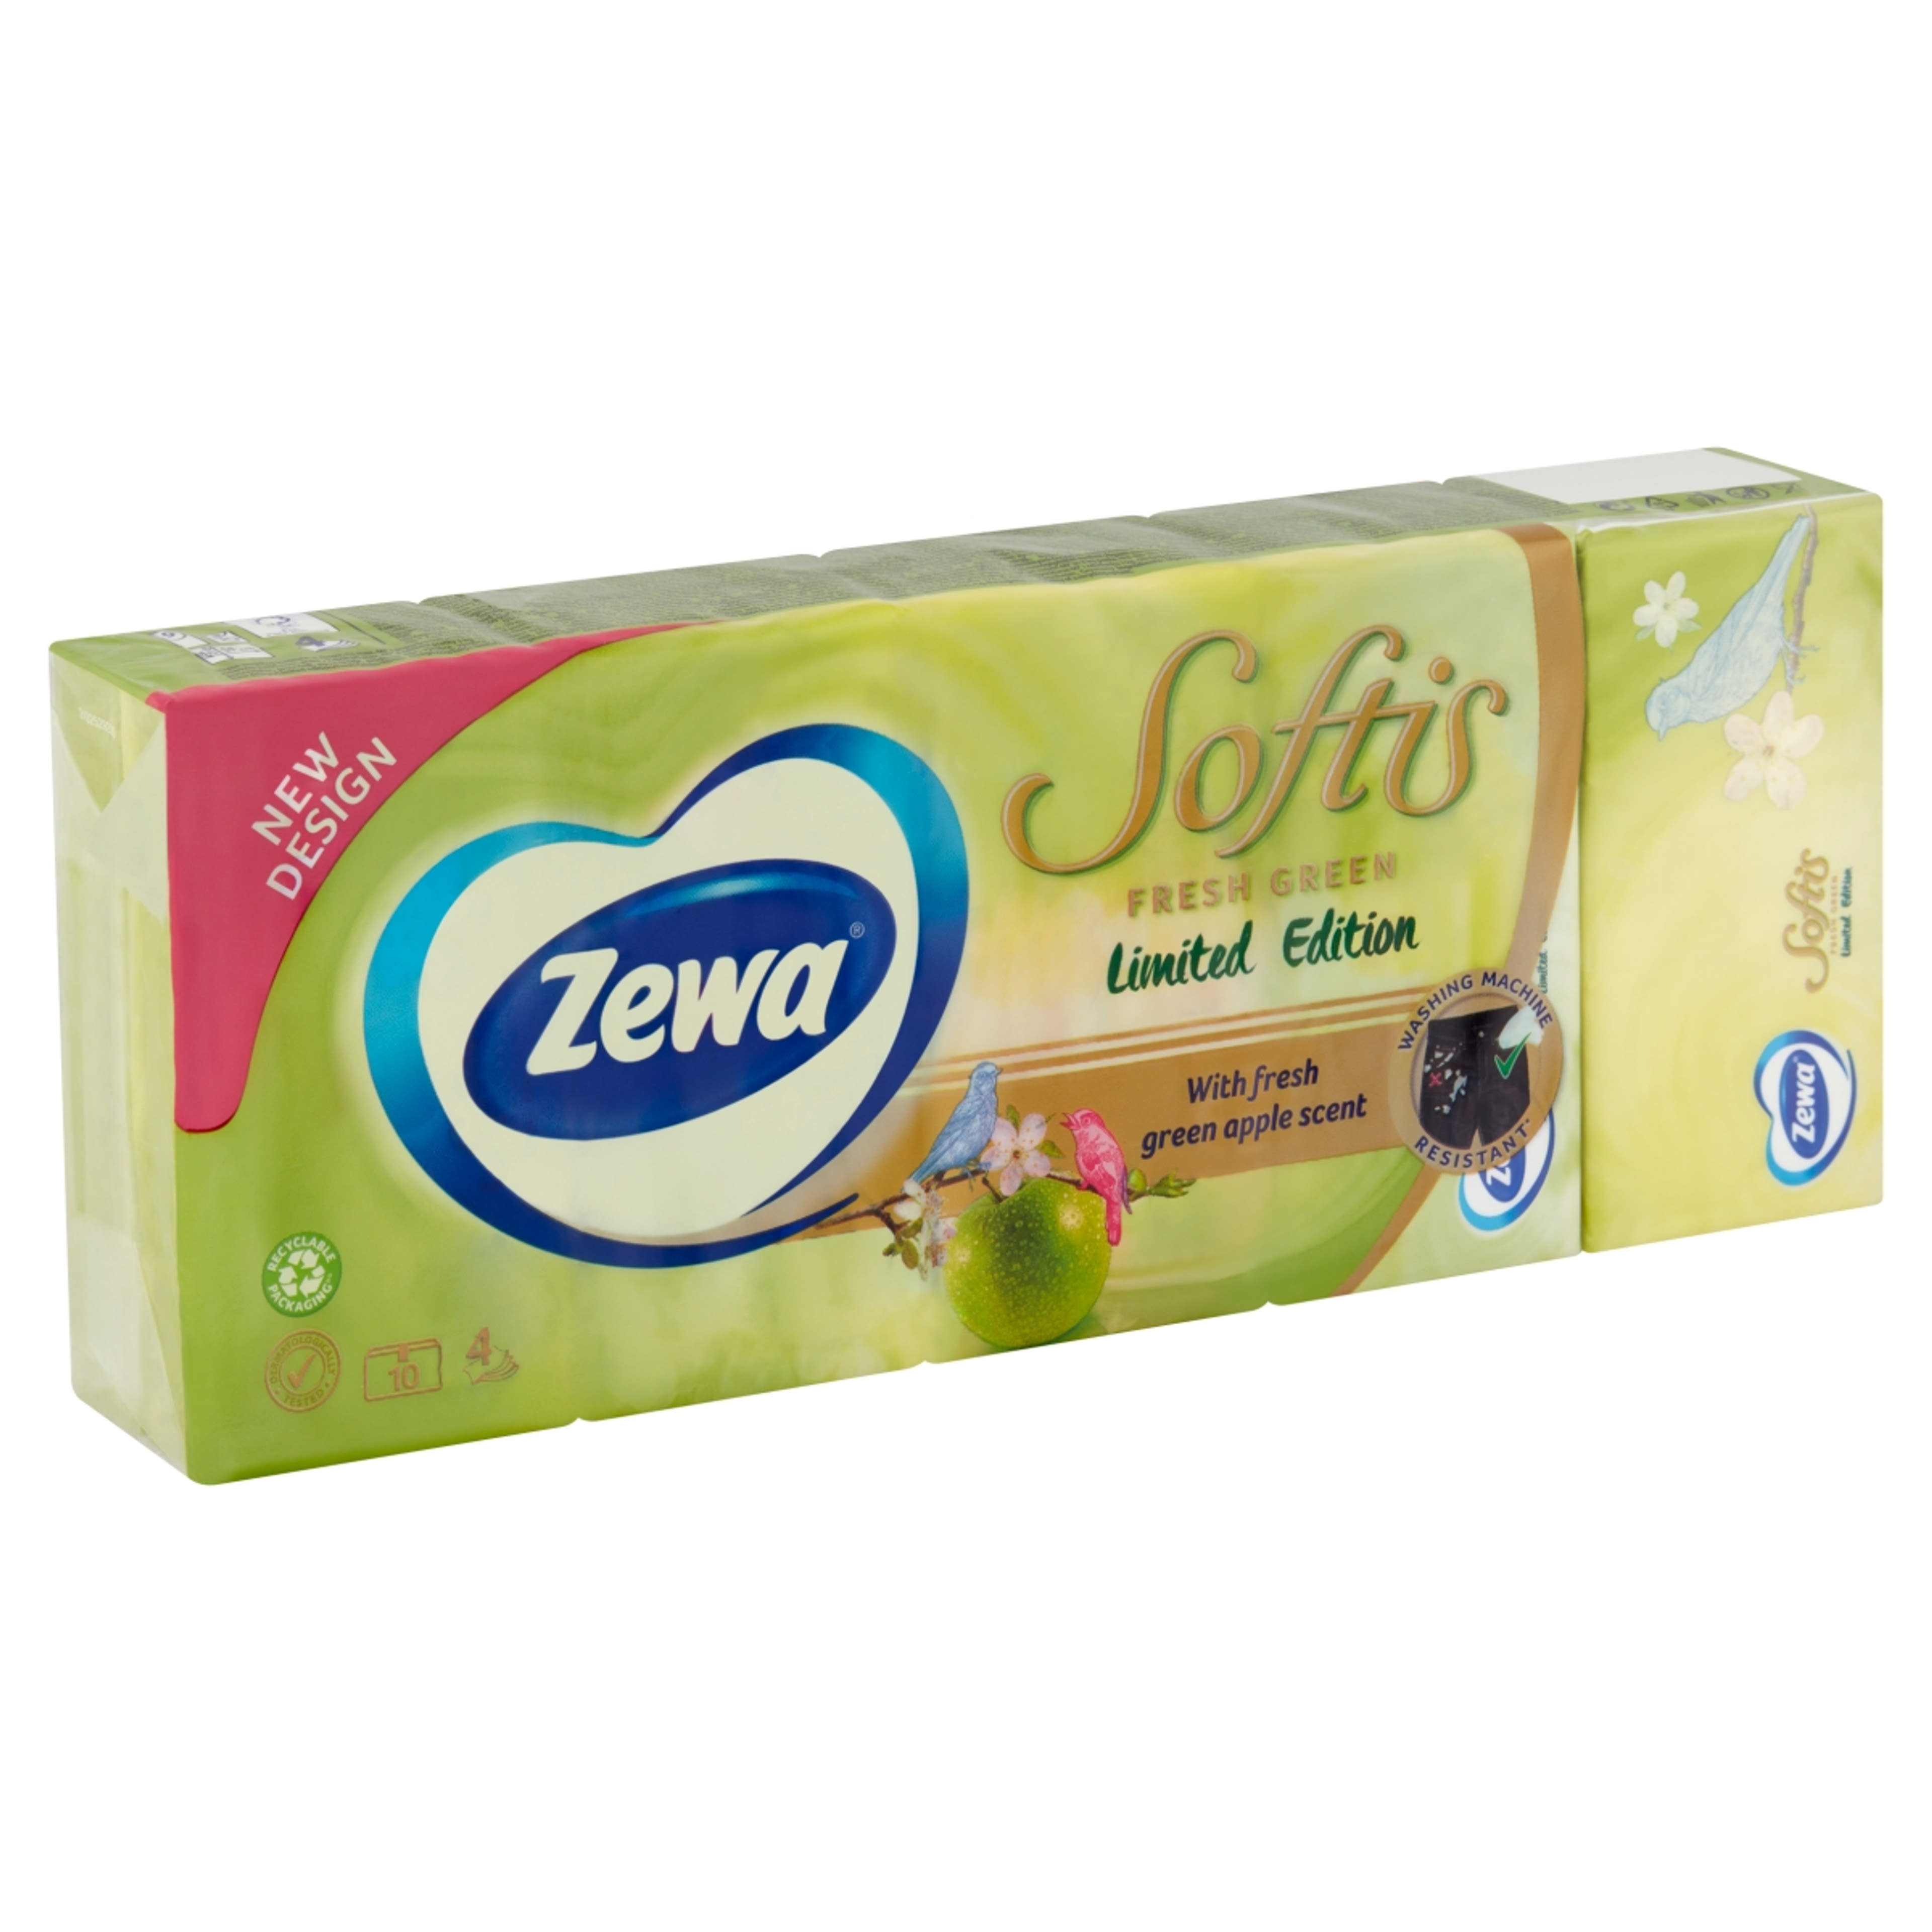 Zewa softis papírzsebkendő limited edition 4 rétegű 10x9 - 90 db-2